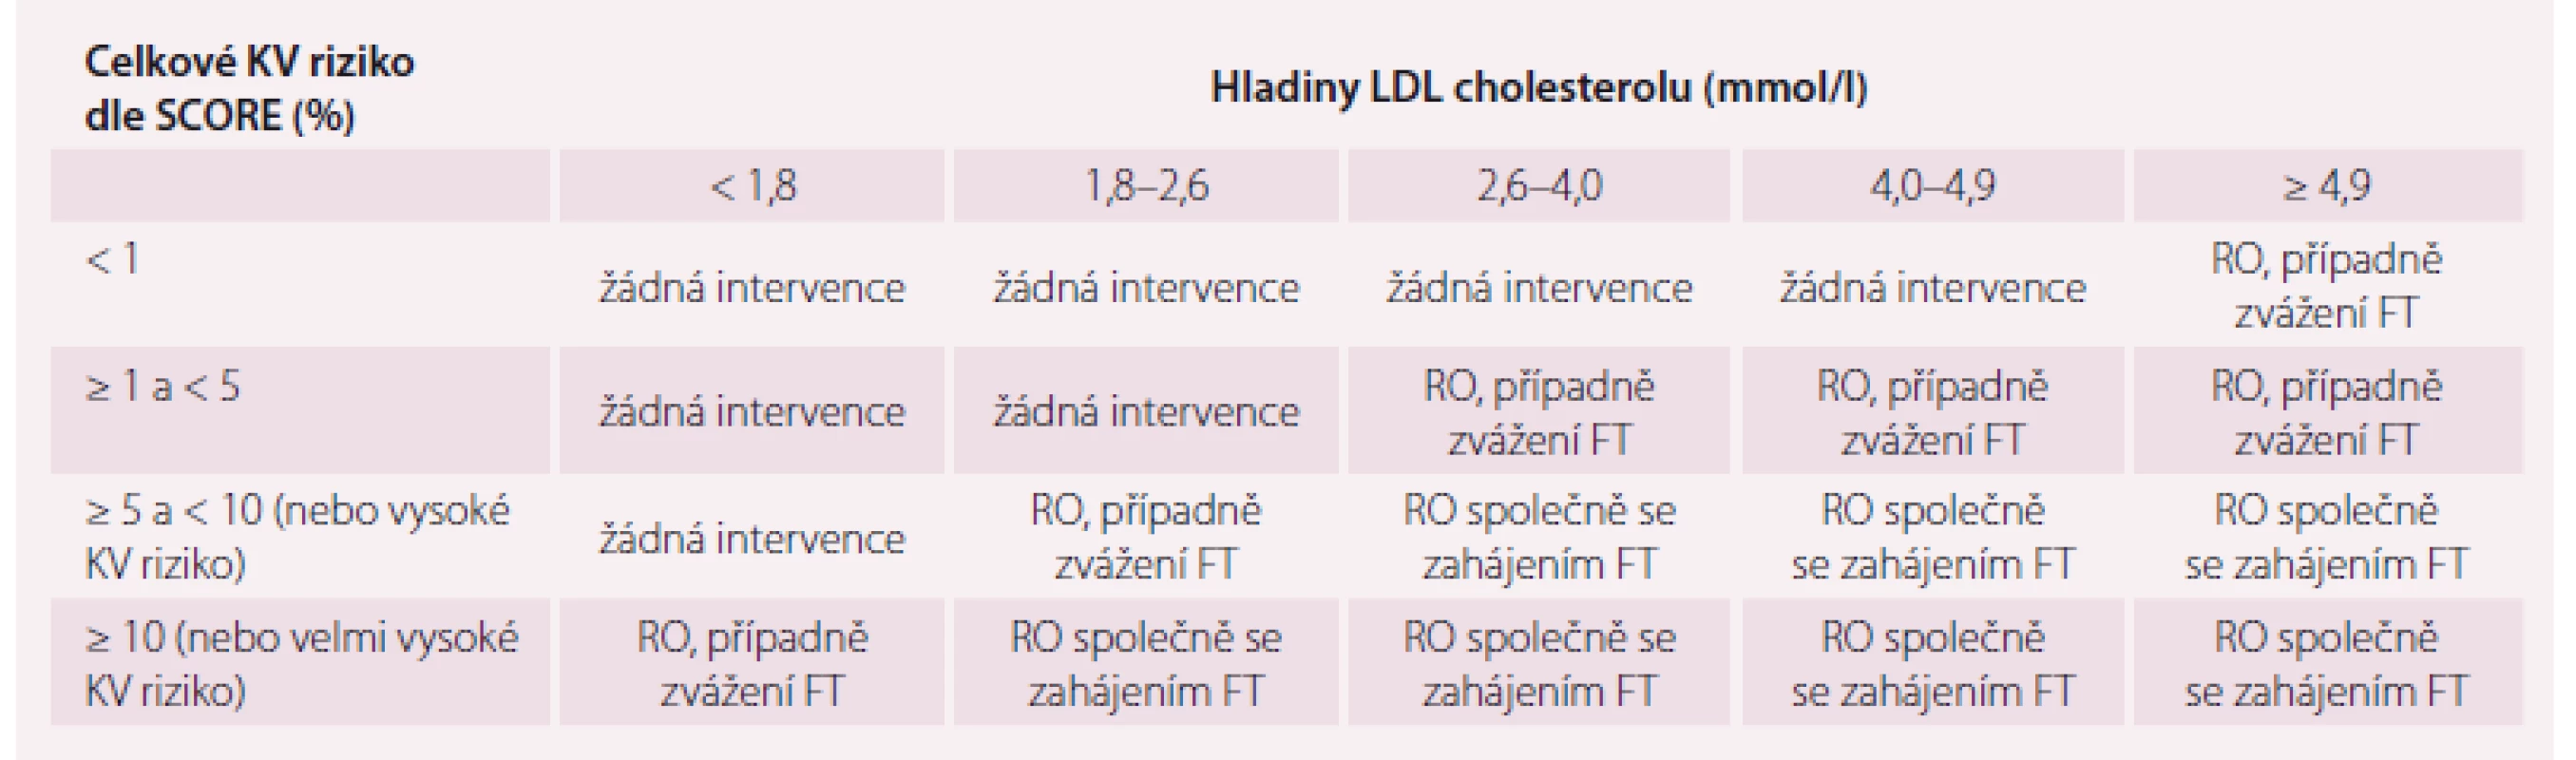 Intervenční strategie dle individuálního KV rizika a hladiny LDL cholesterolu.